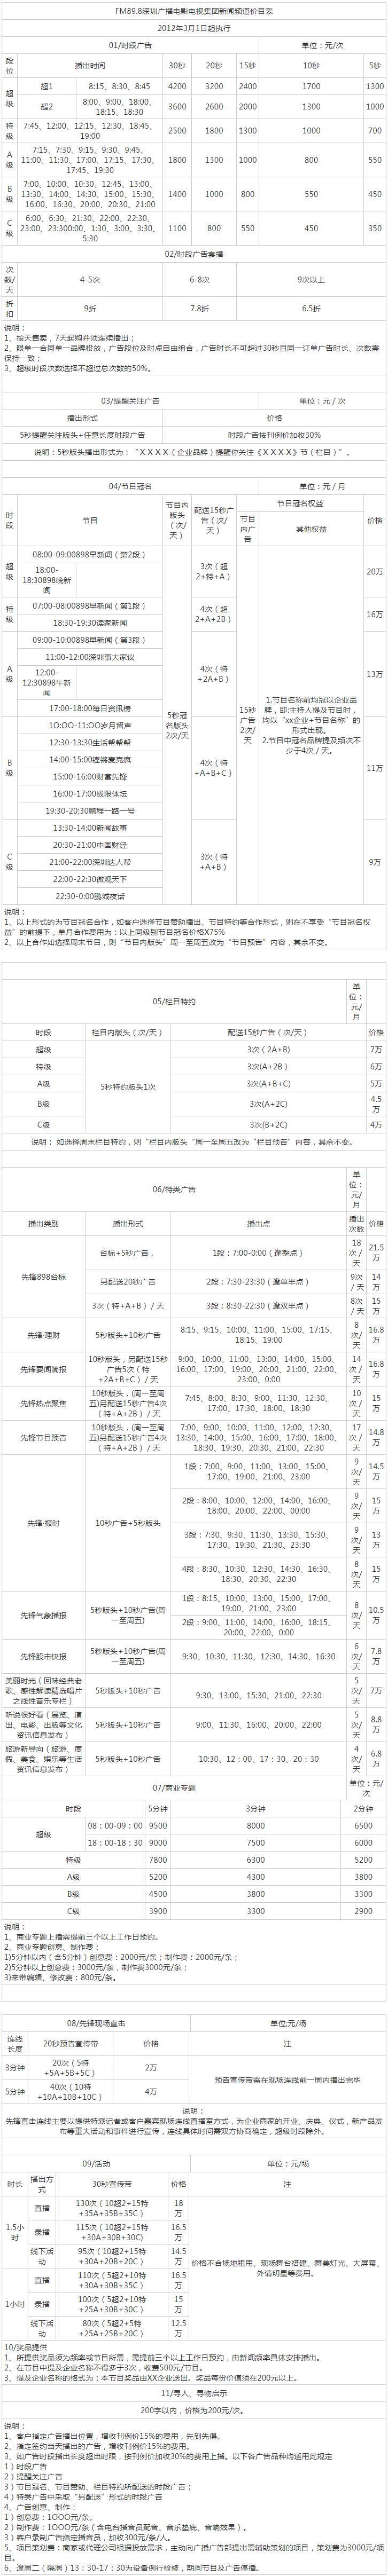 2012深圳人民广播电台新闻频率 FM89.8广告报价表.png